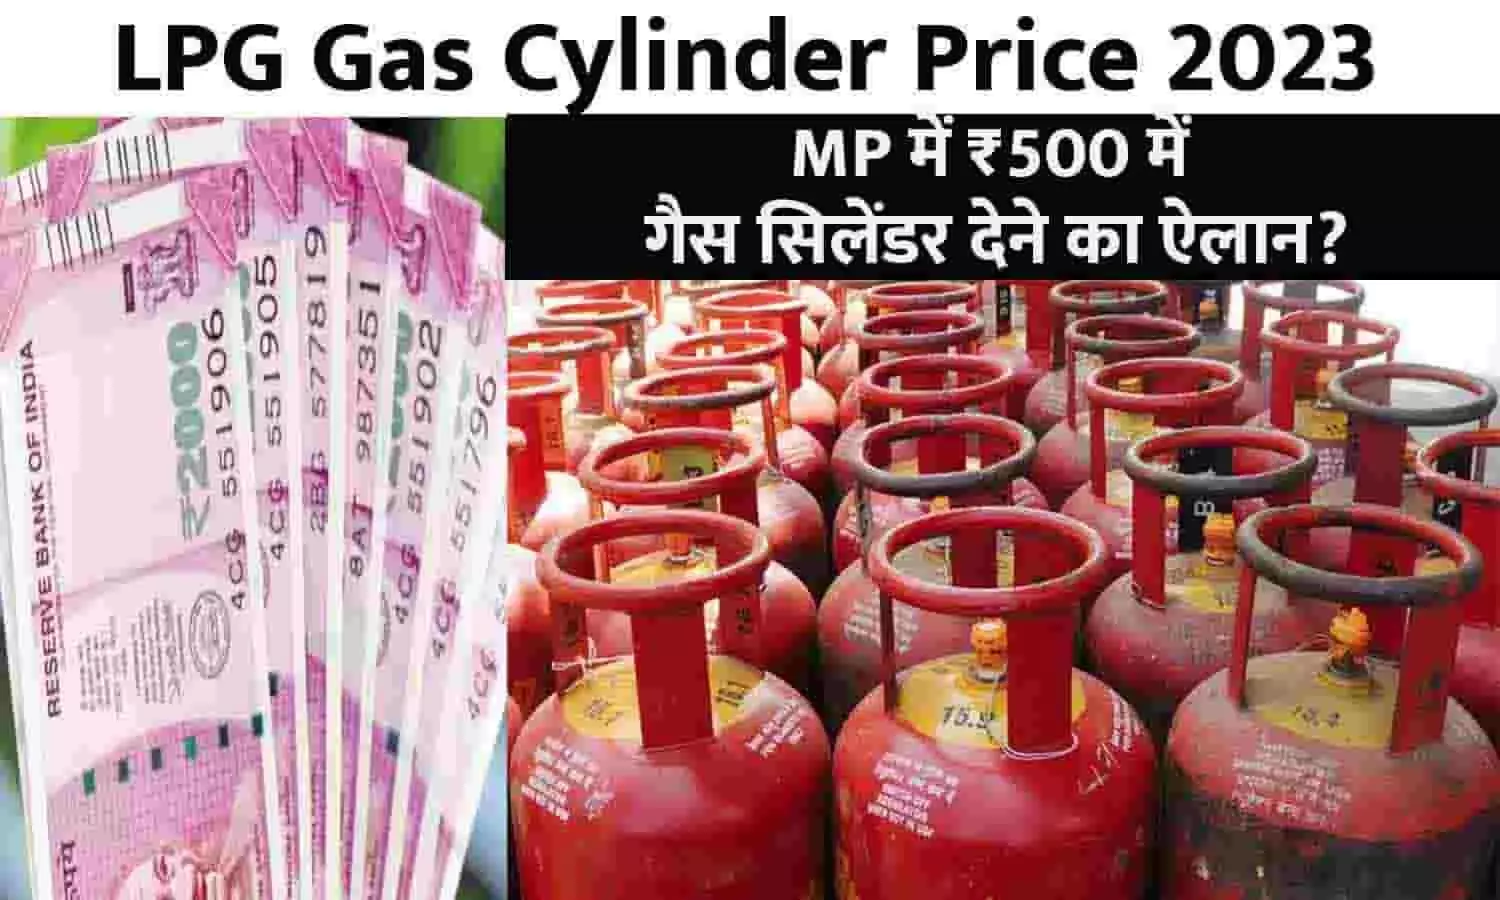 LPG Gas Cylinder Price Big Alert 2023: गुड न्यूज़! MP में ₹500 में गैस सिलेंडर देने का ऐलान?